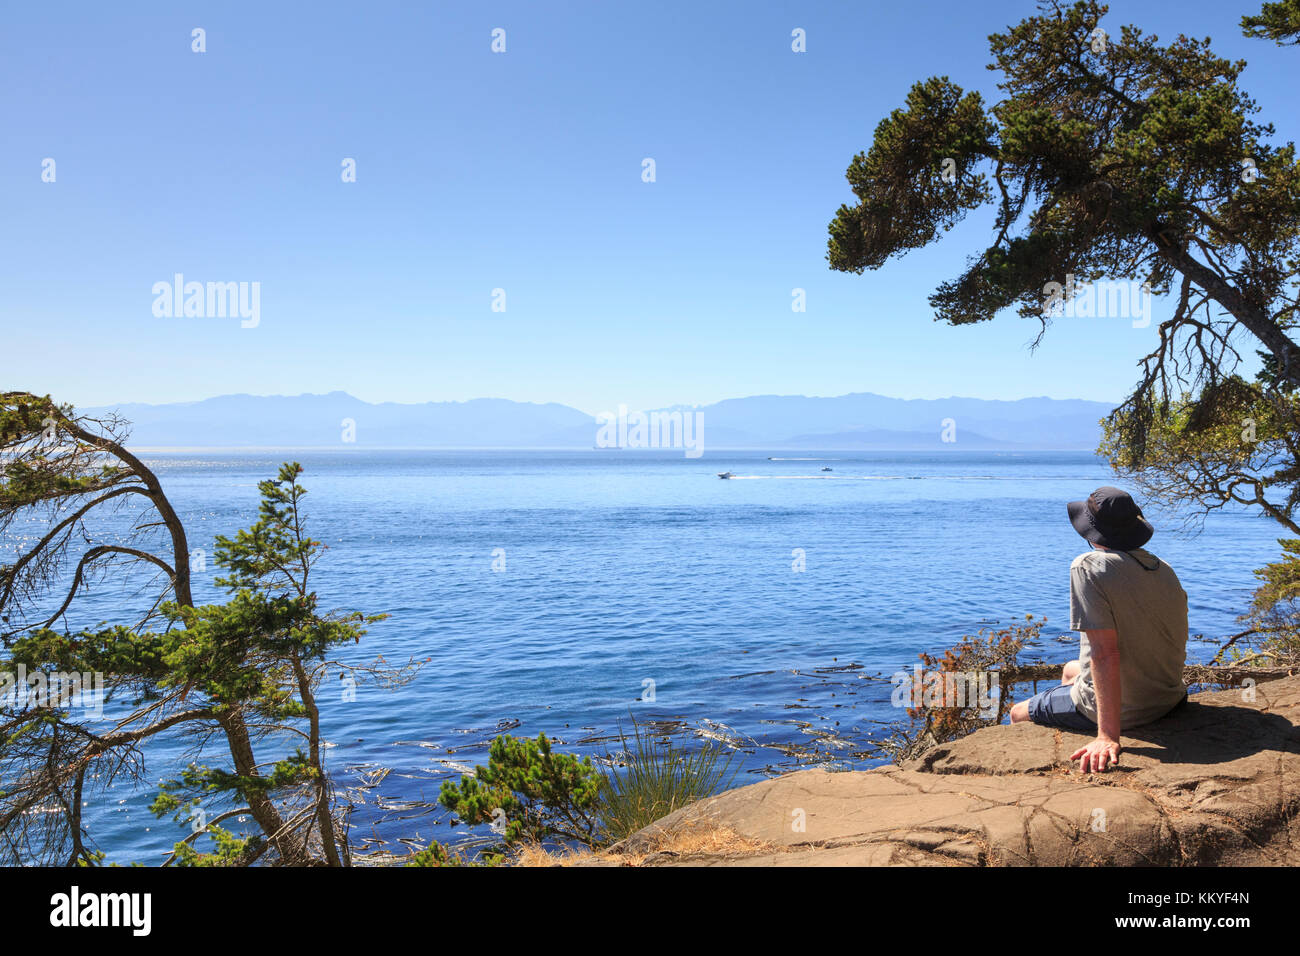 Sentier du littoral avec montagnes olympiques à travers le détroit de Juan de Fuca, parc régional East Sooke, Sooke, île de Vancouver, Colombie-Britannique, ca Banque D'Images